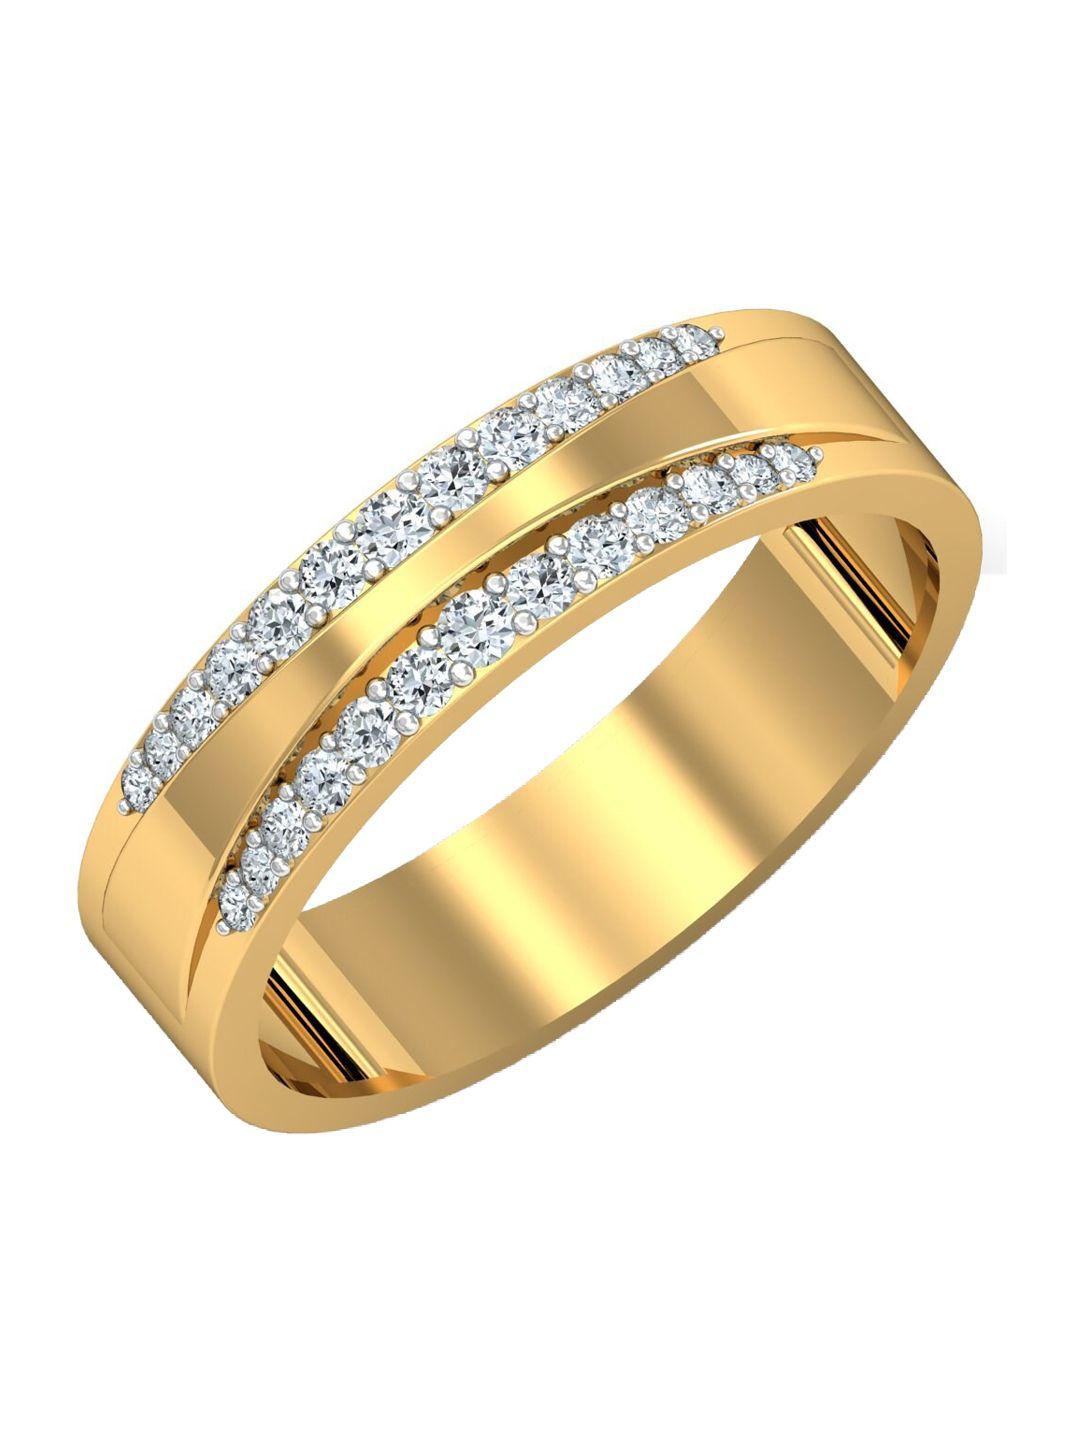 kuberbox men kehri 18kt gold diamond studded ring - 3.52gm